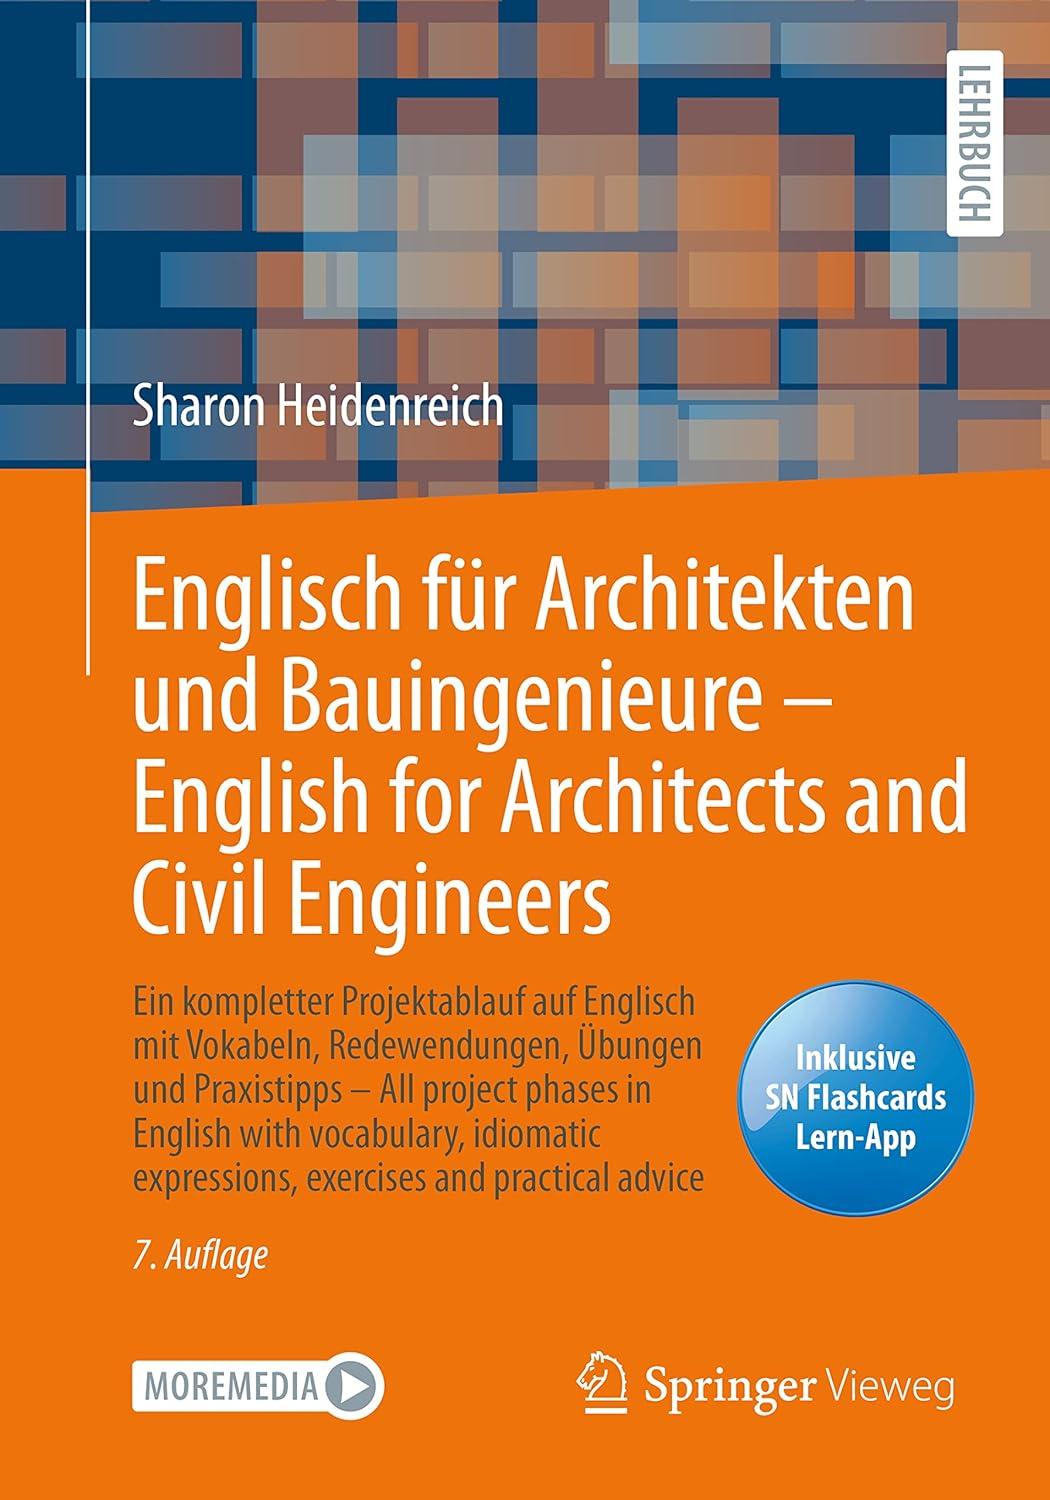 englisch für architekten und bauingenieure english for architects and civil engineers 7th edition sharon